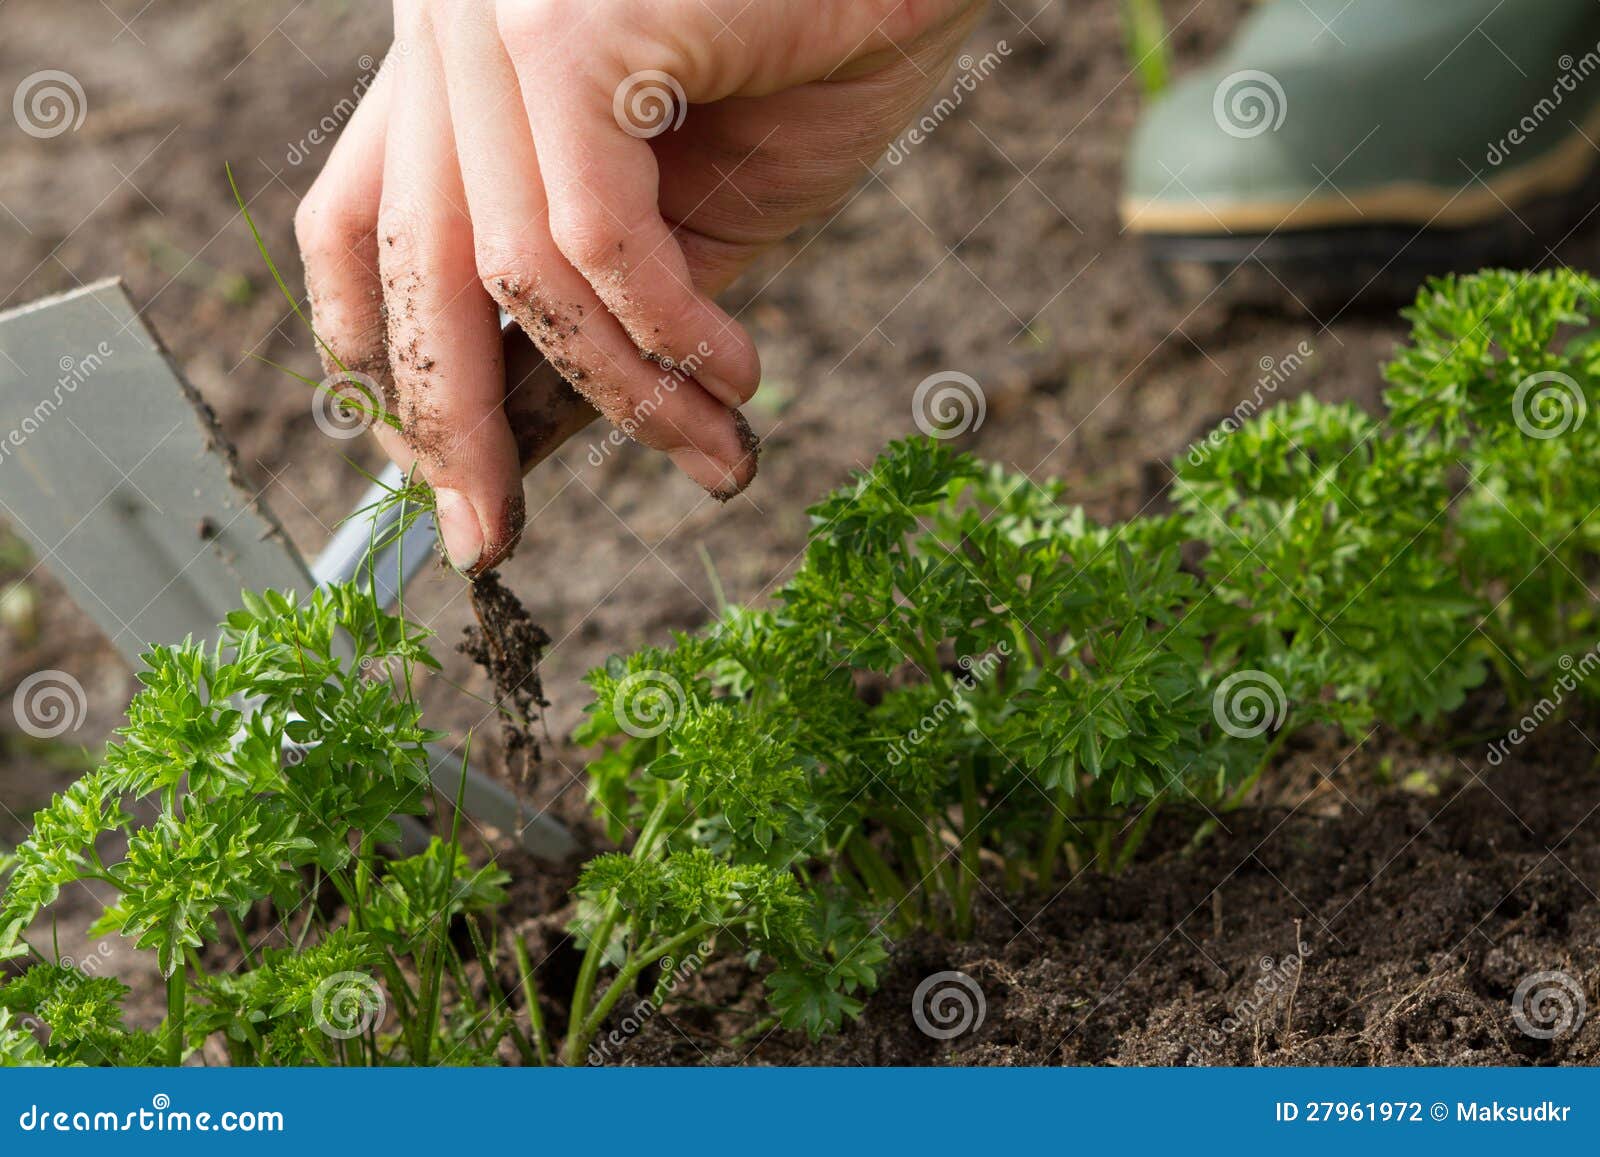 weeding of parsley bed